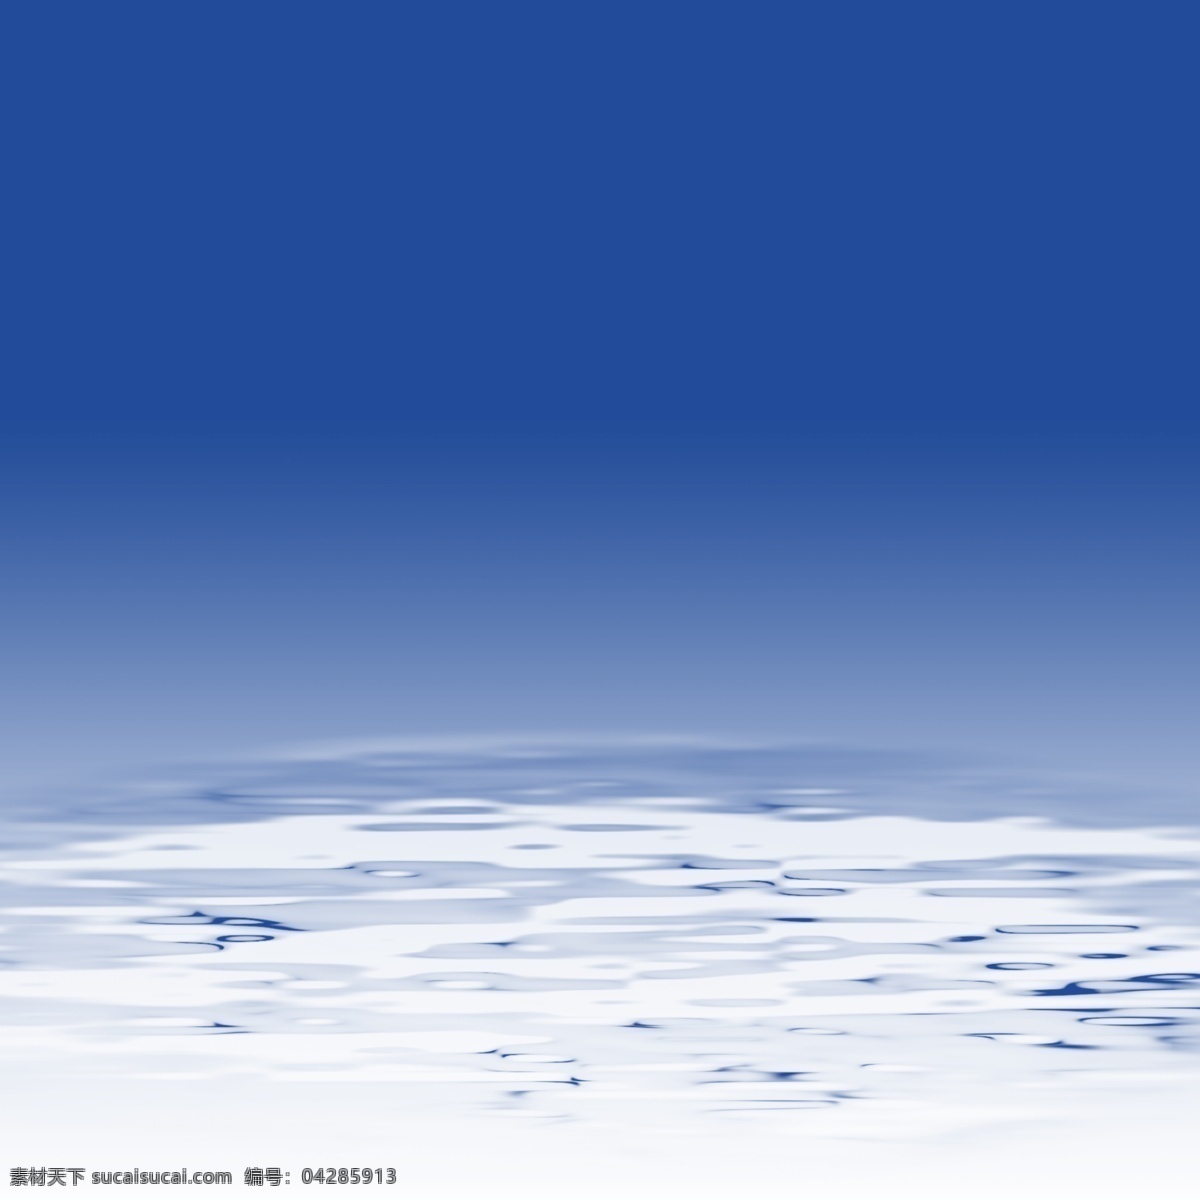 水面3图片 水波 波痕 水面 蓝色 白色 波浪 底纹边框 背景底纹